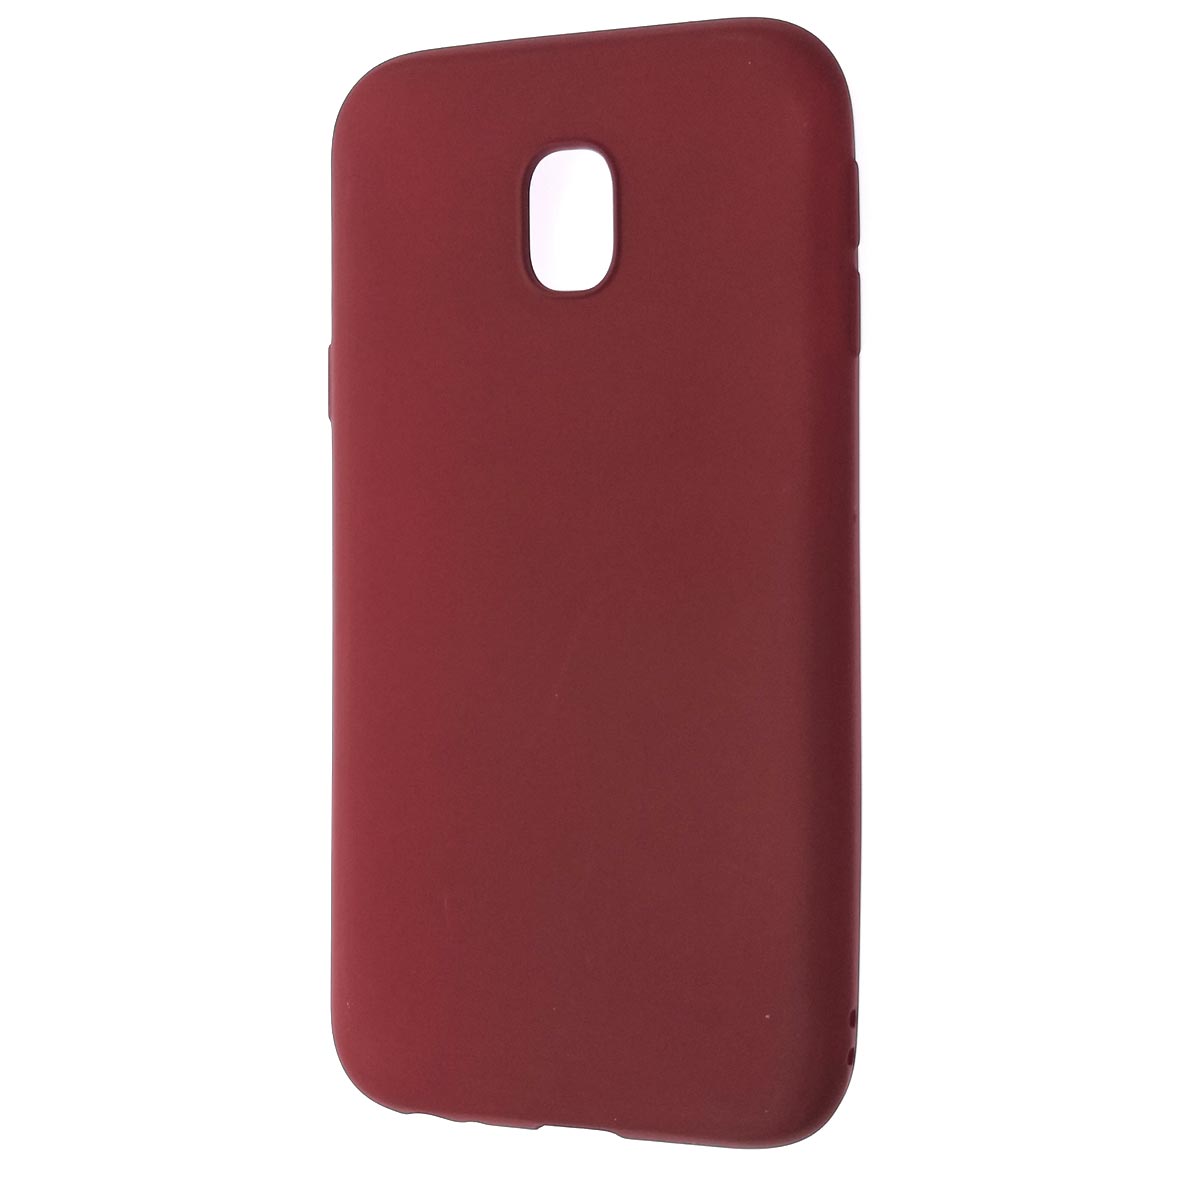 Чехол накладка для SAMSUNG Galaxy J3 2017 (SM-J330), силикон, цвет бордовый